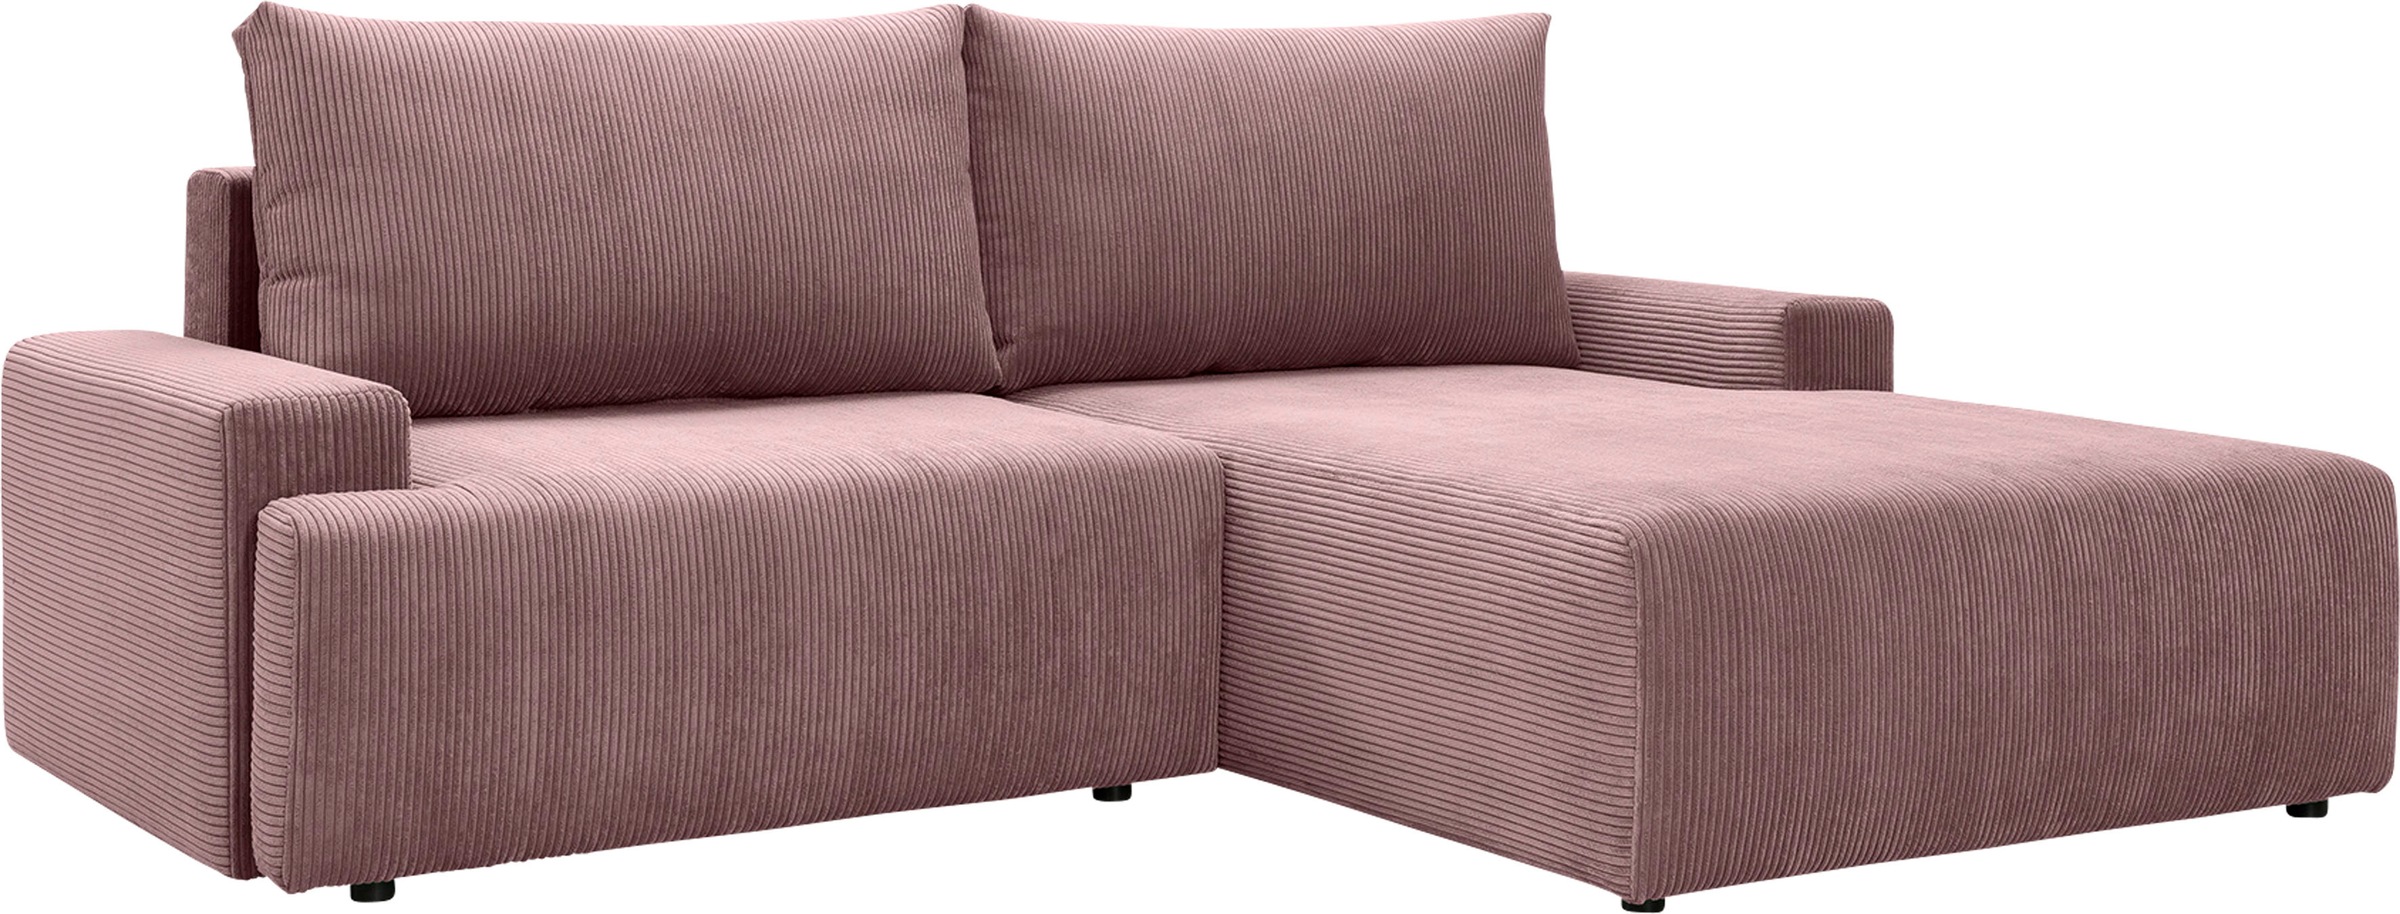 exxpo - sofa fashion Ecksofa Bettfunktion kaufen verschiedenen »Orinoko«, und in inklusive jetzt Cord-Farben Bettkasten